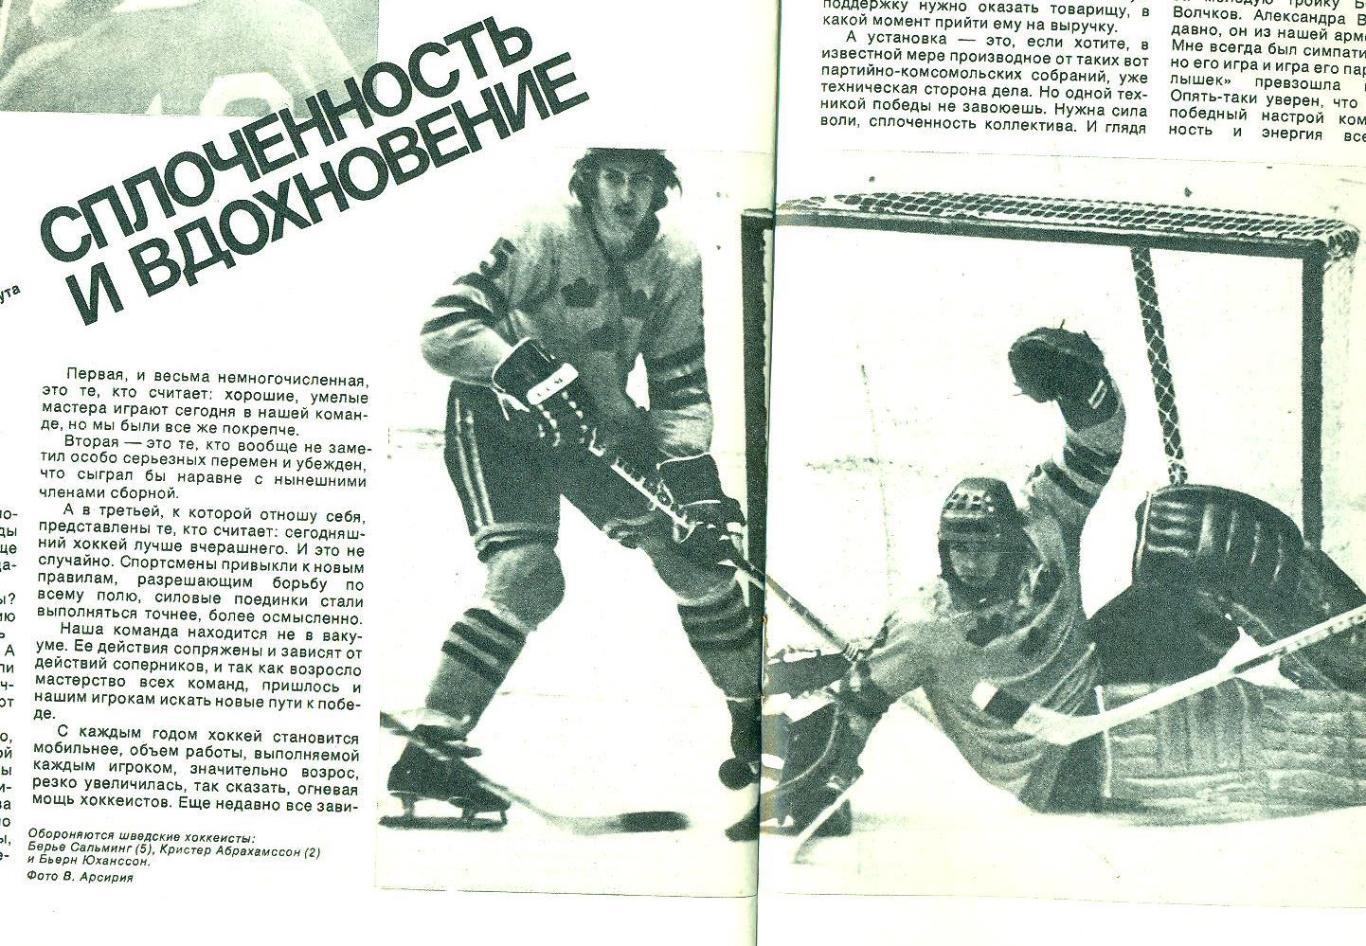 Спортивные игры 6 1973 г. 1